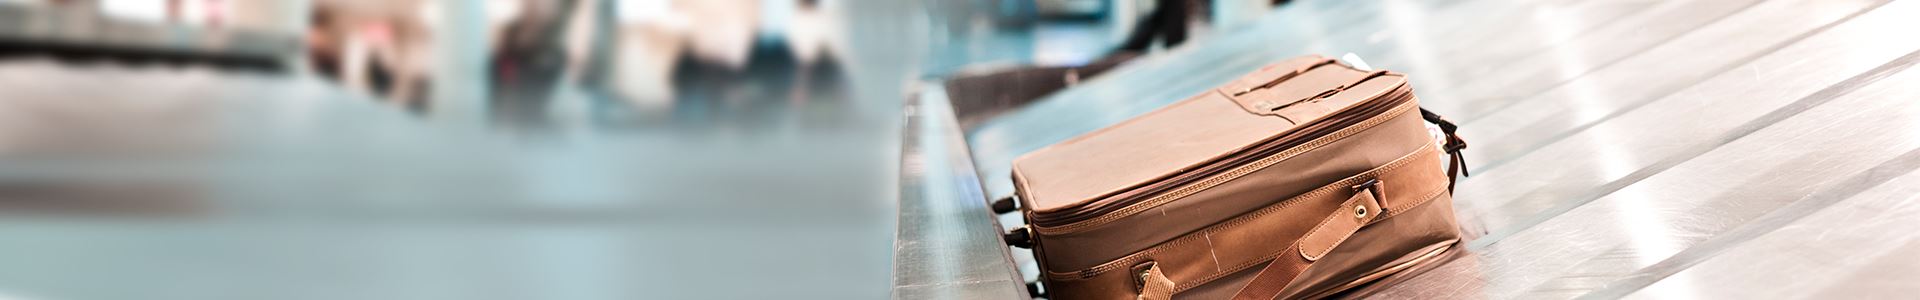 L'image montre une valise marron posée sur un convoyeur à bagages de l'aéroport. A côté il n'y a pas d'autres valises.